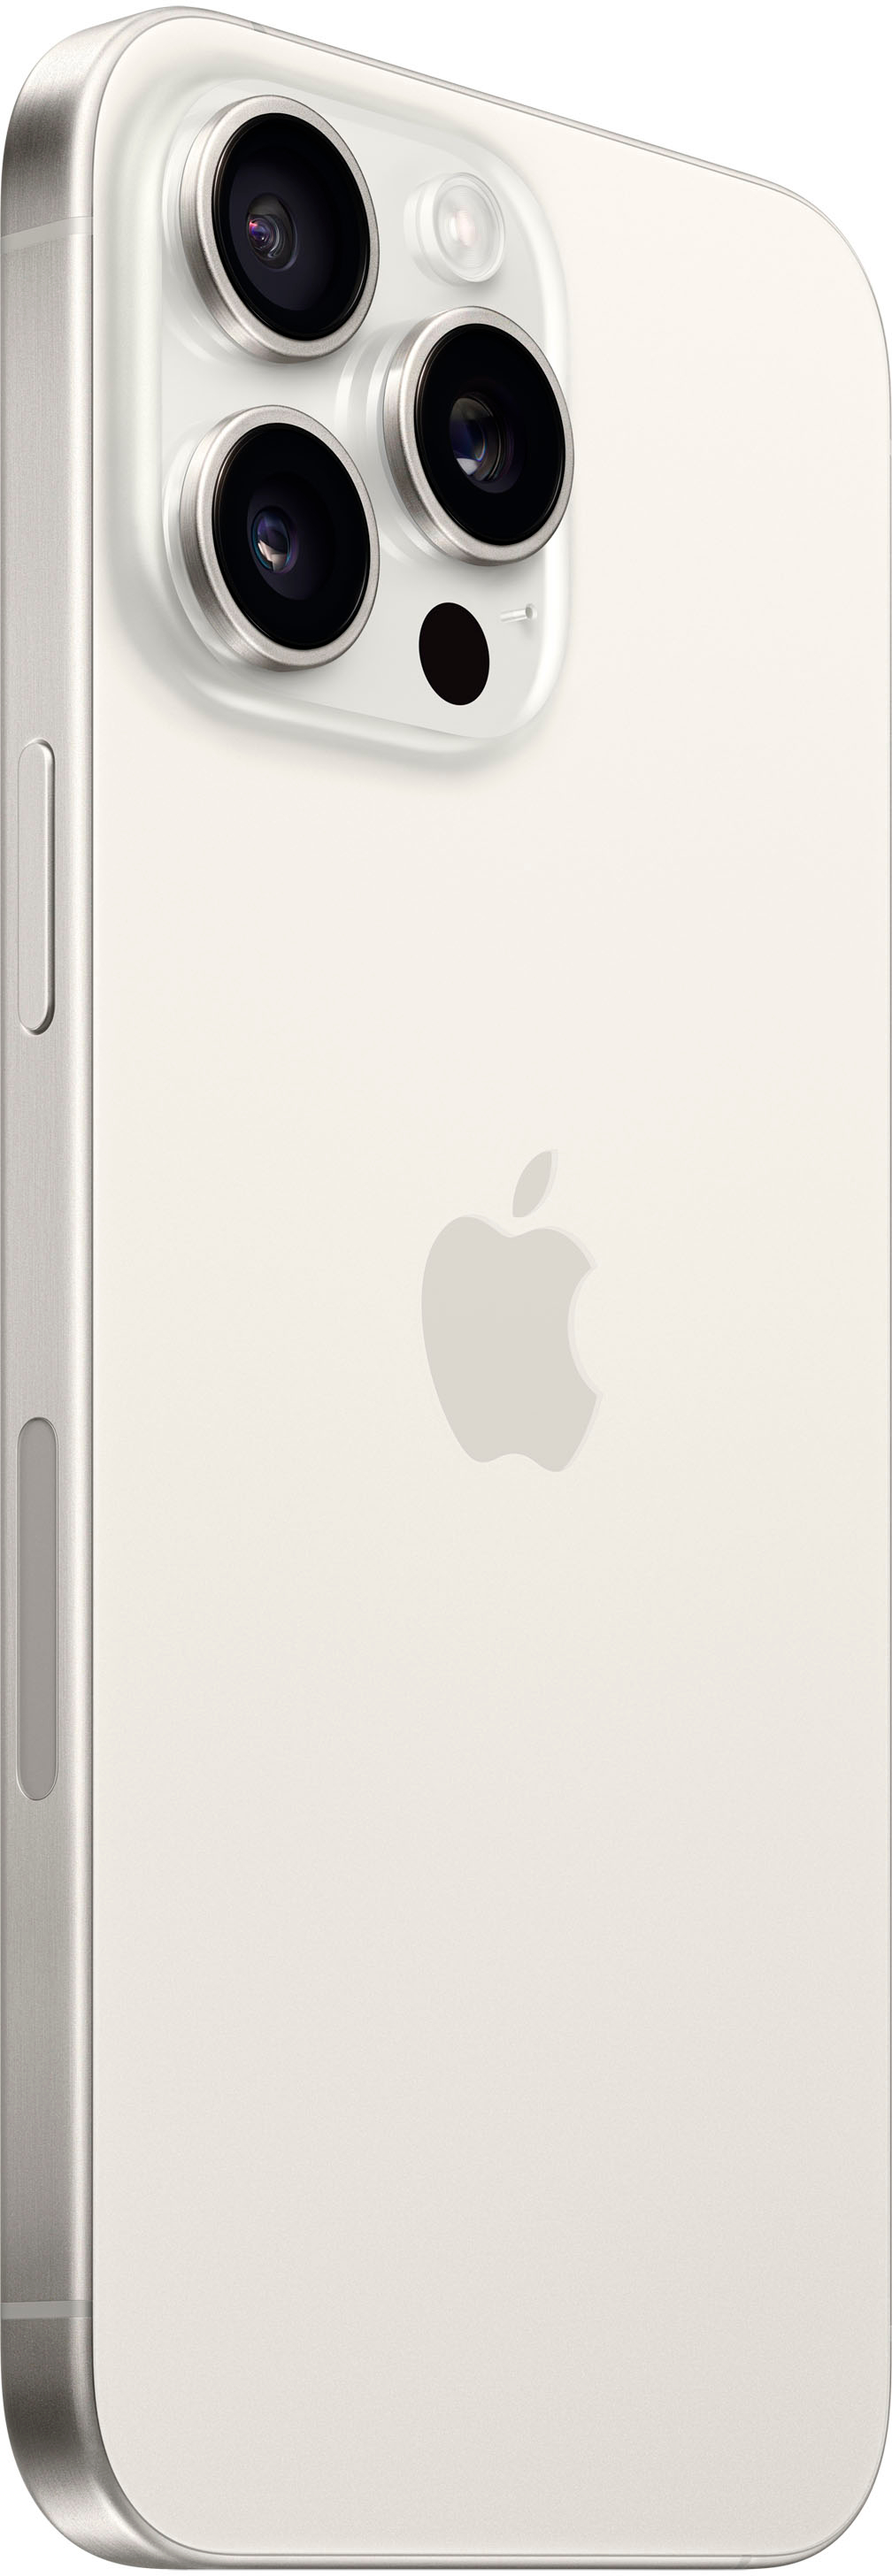 AT&T Apple iPhone 15 Pro Max 1TB Blue Titanium